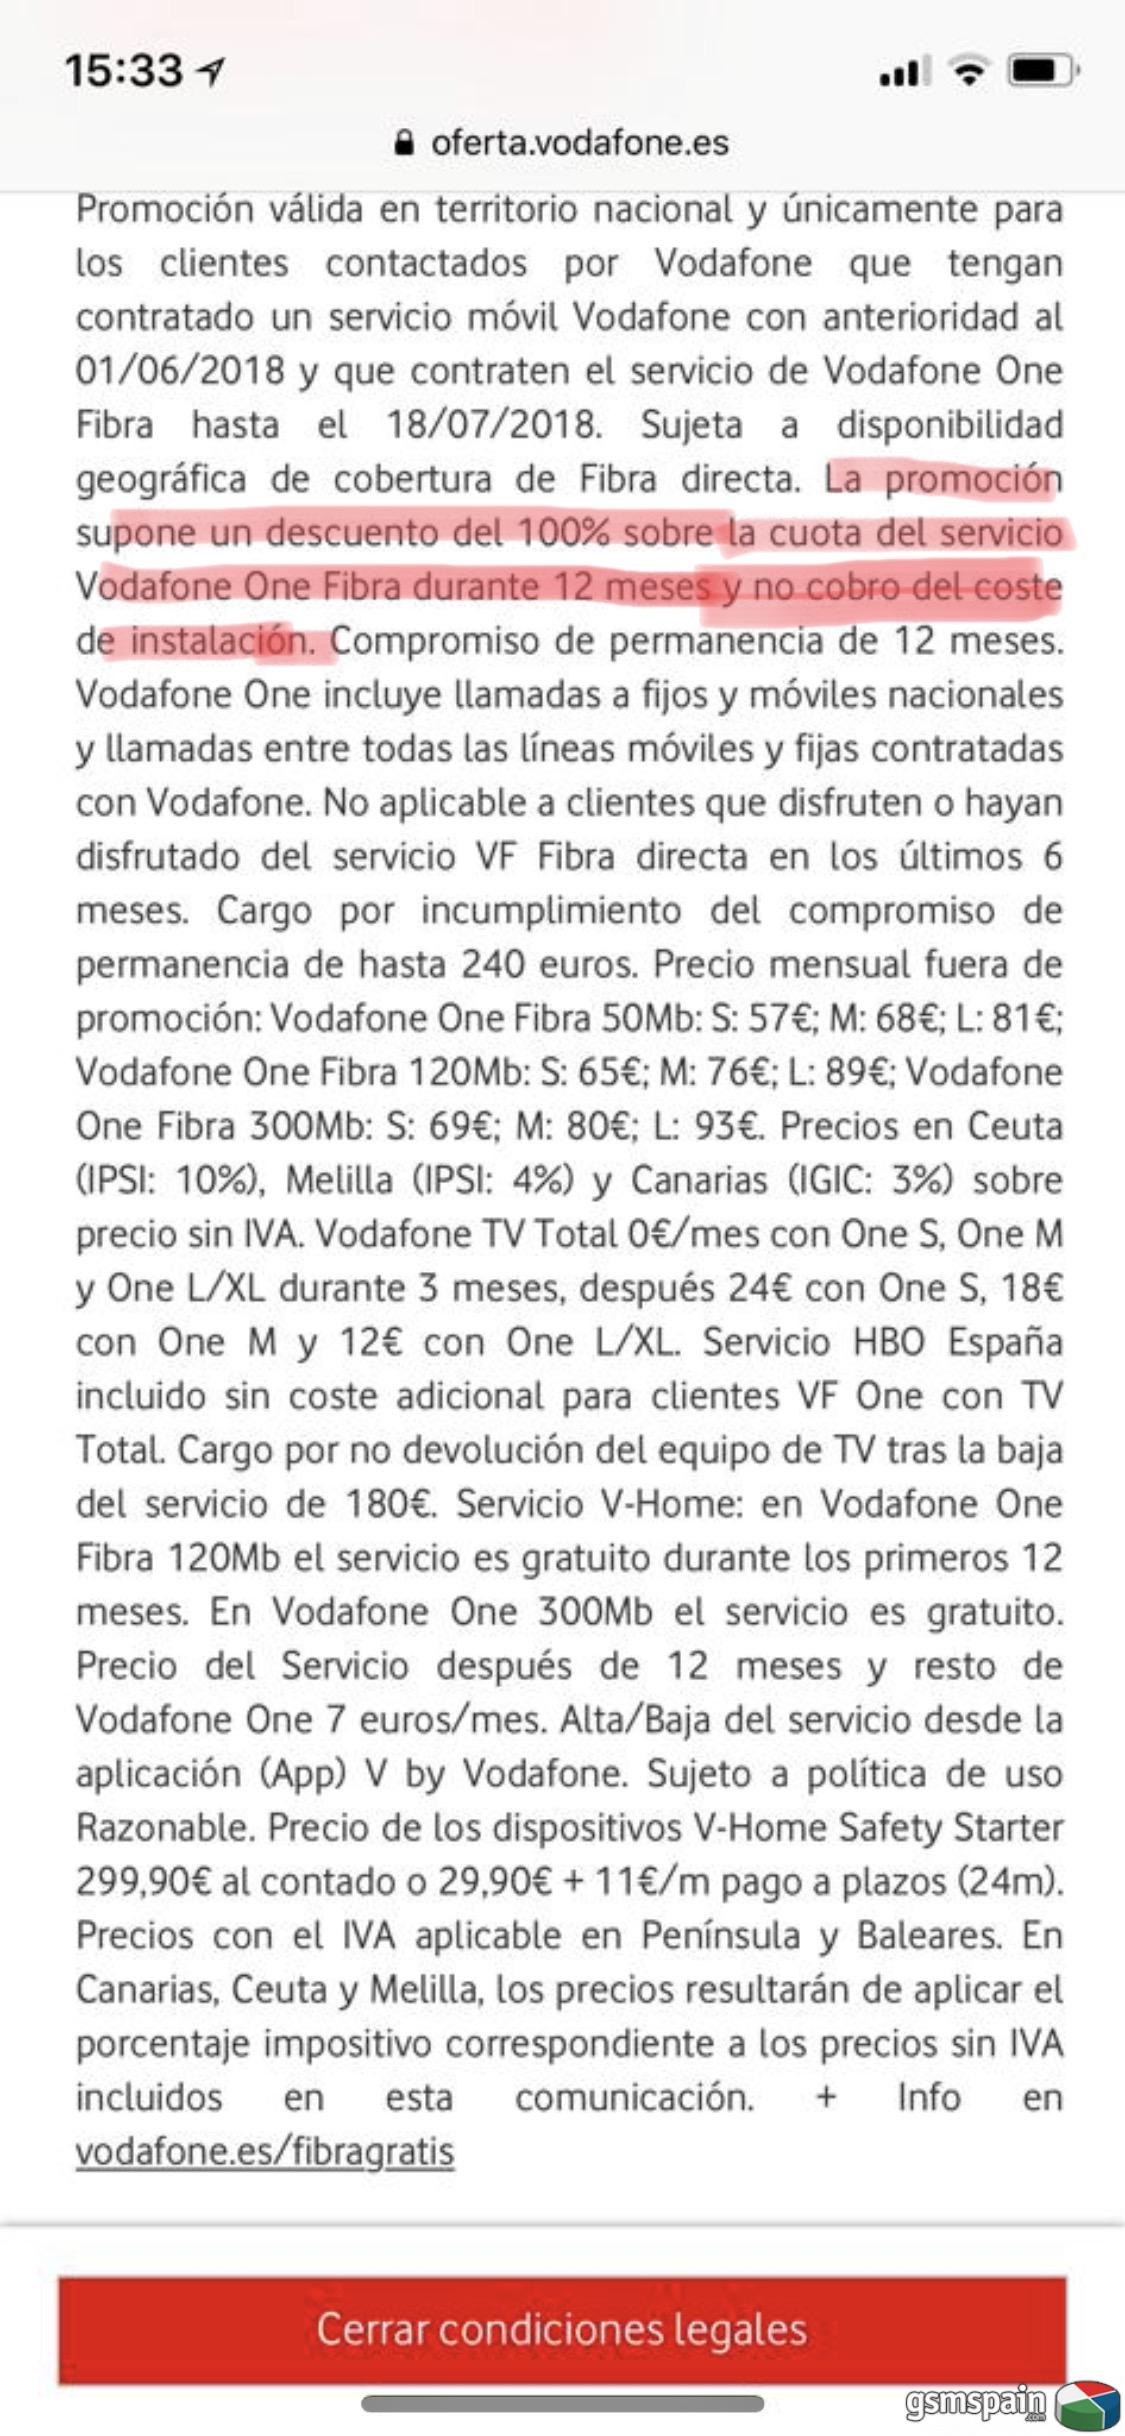 [AYUDA] Problemas con Vodafone no aplica descuentos